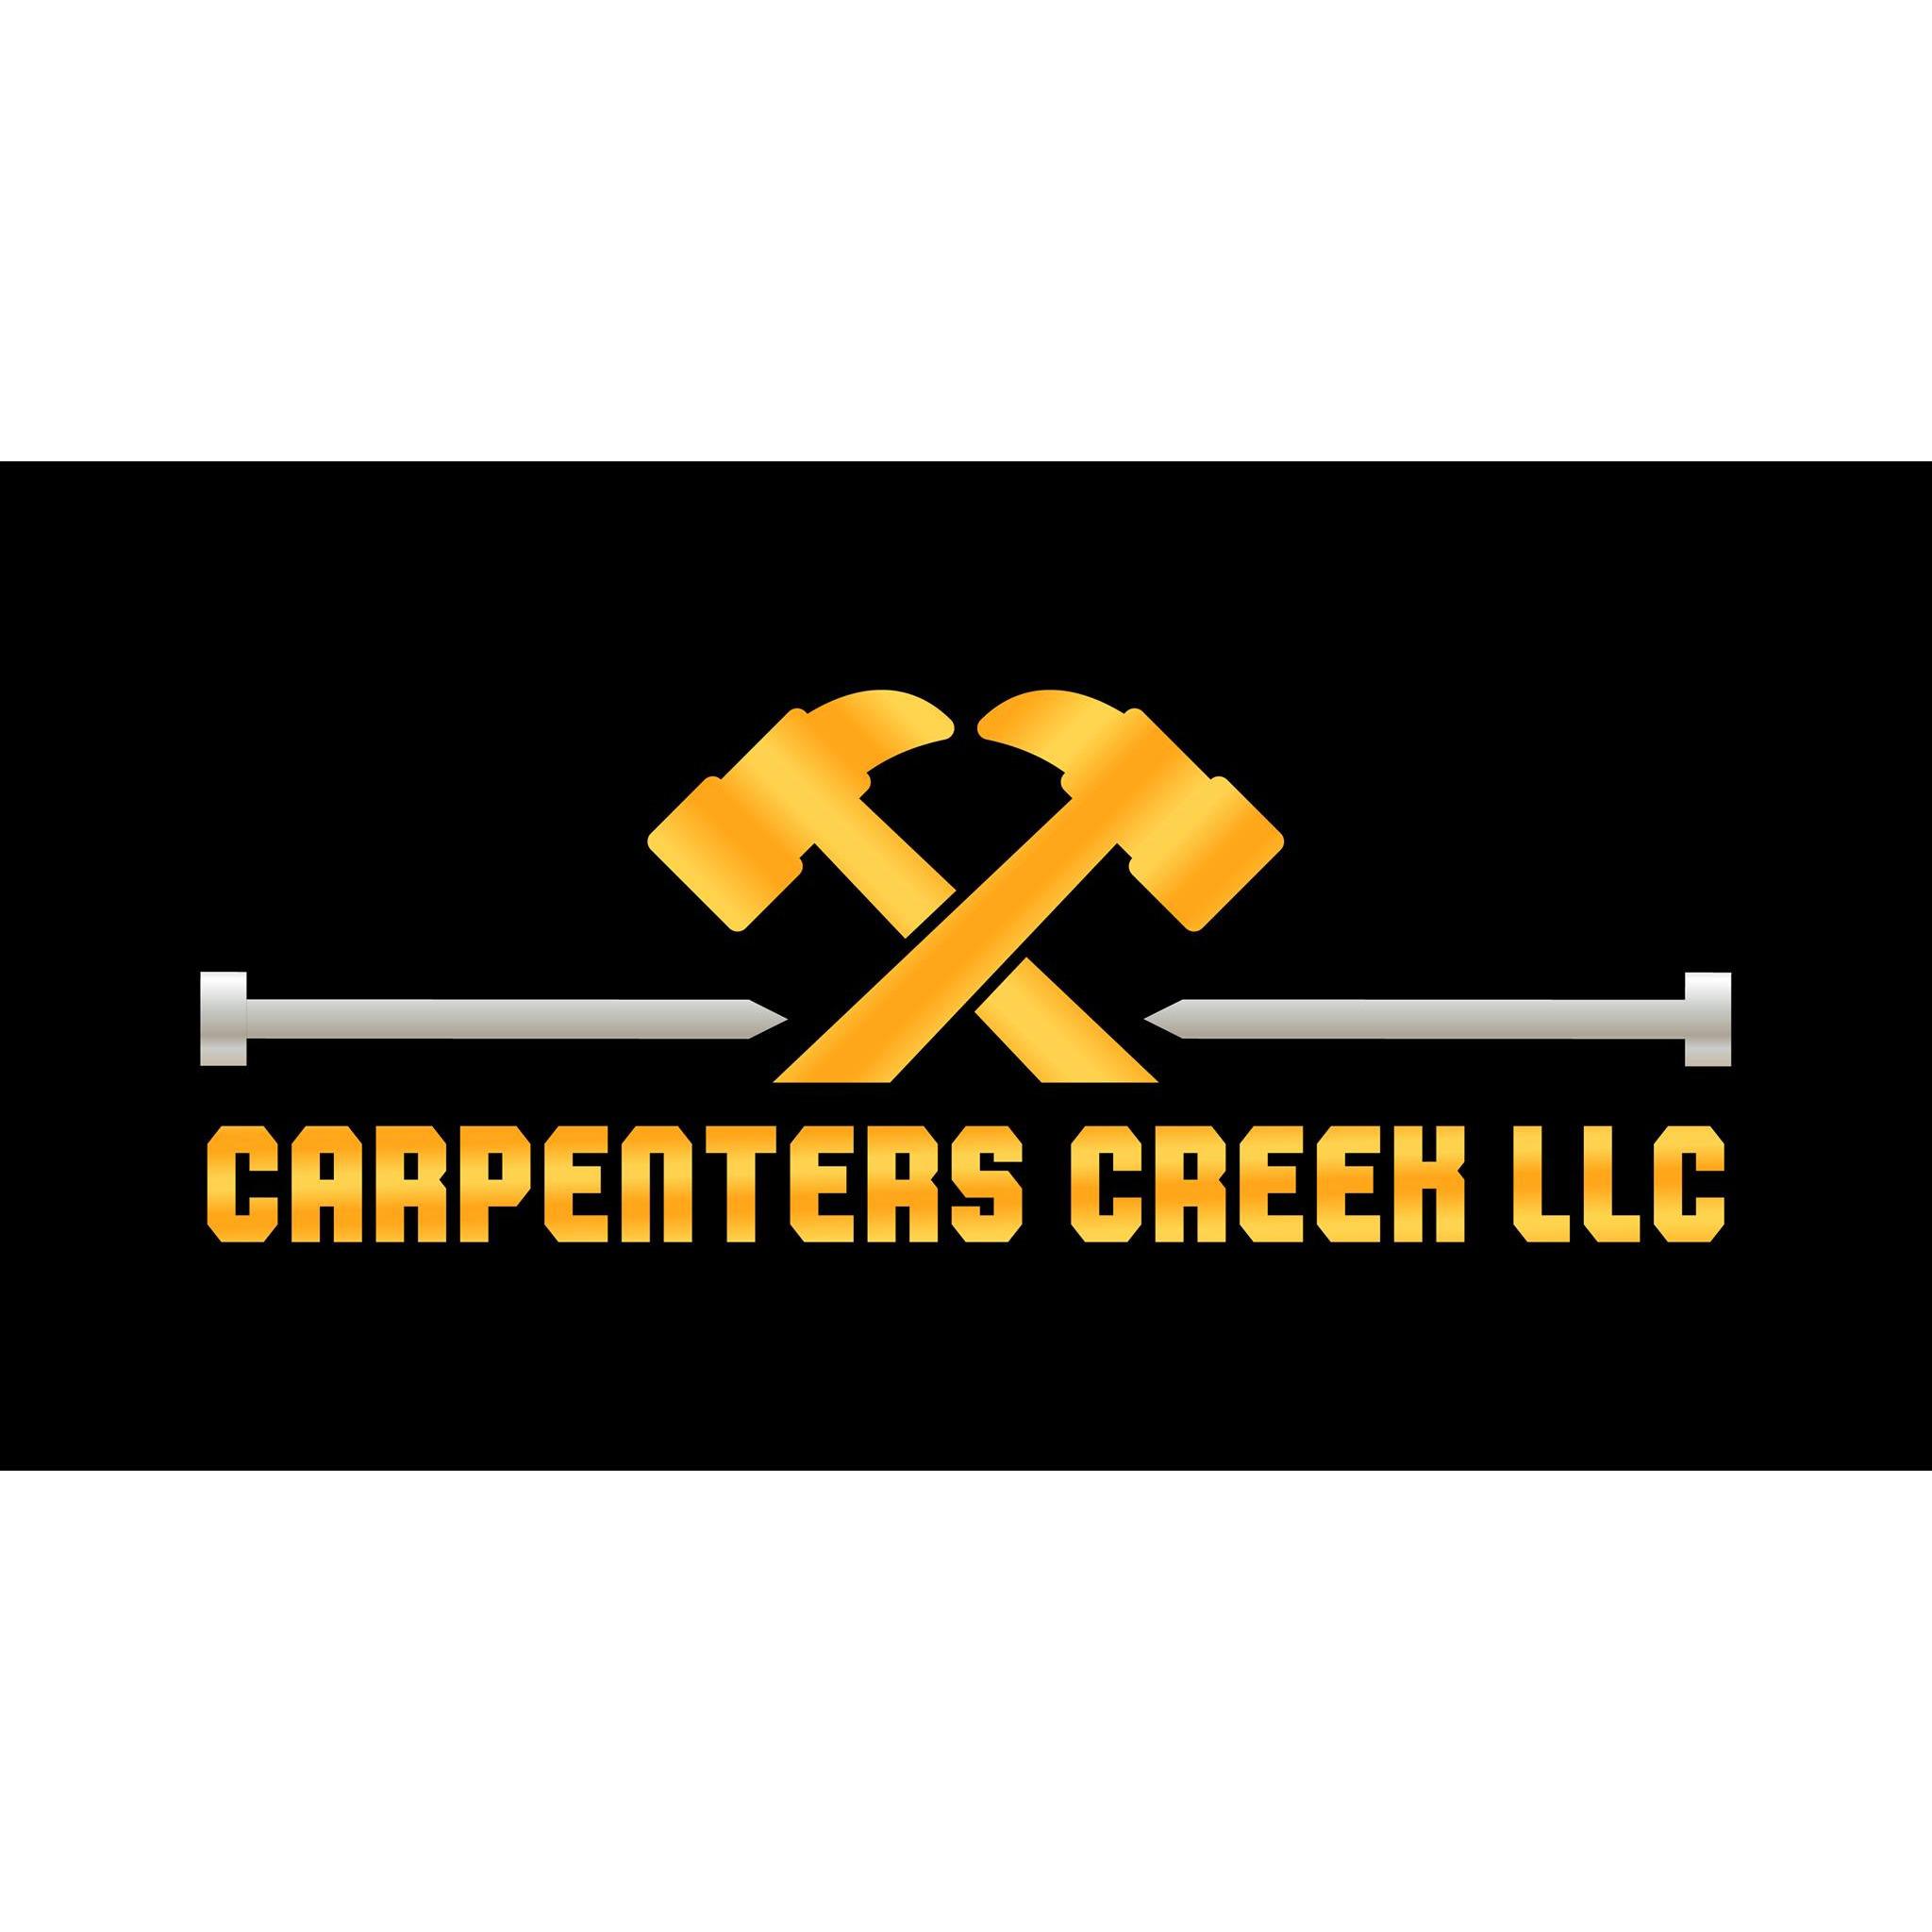 Carpenters Creek LLC - Felton, DE - (302)632-4296 | ShowMeLocal.com